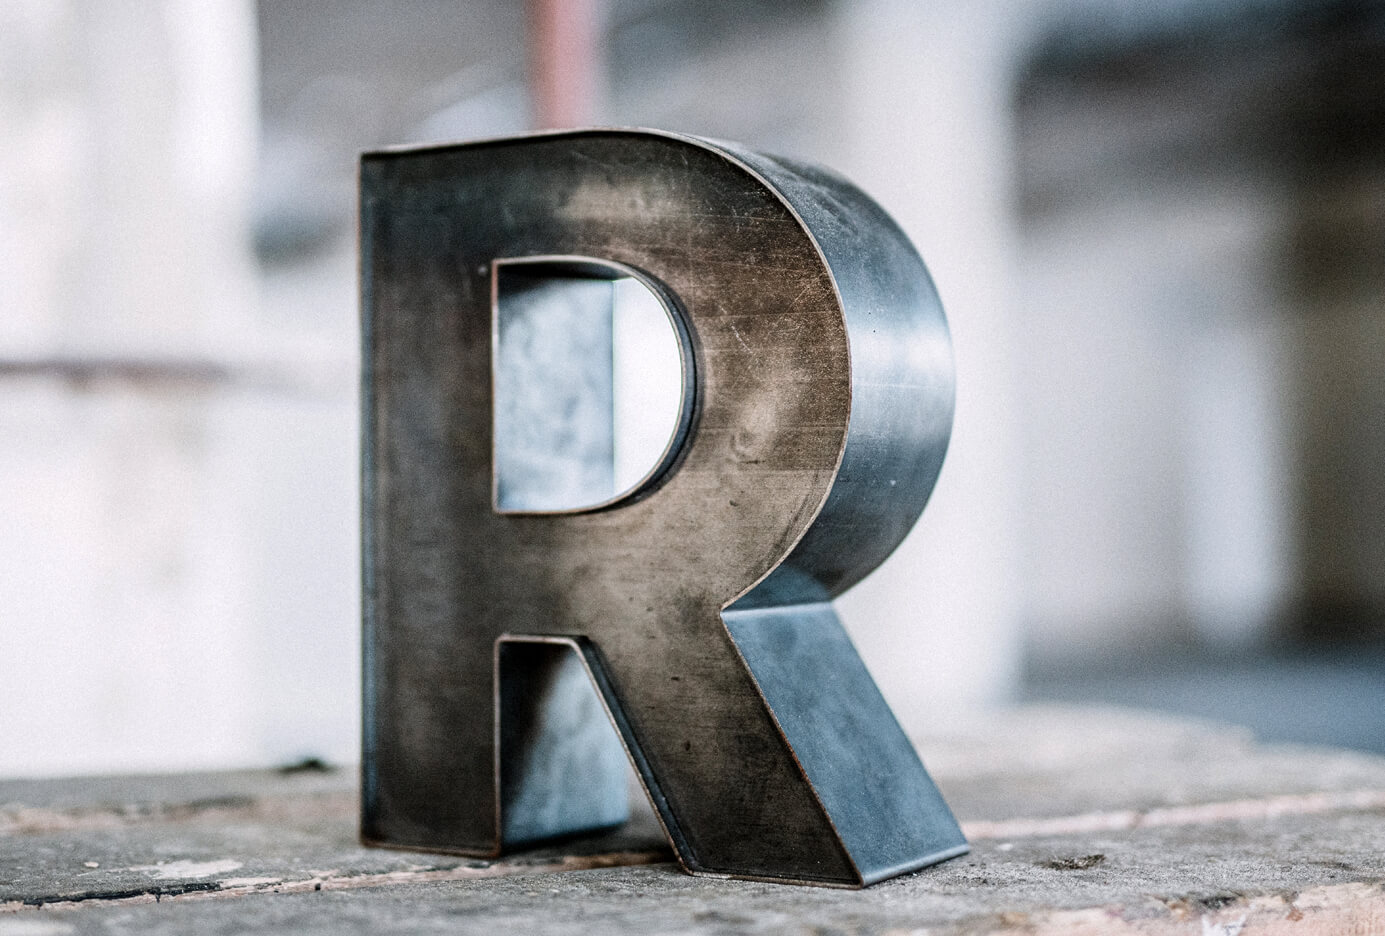 Lettera R metallo - Lettera R in lamiera d'acciaio in stile industriale.